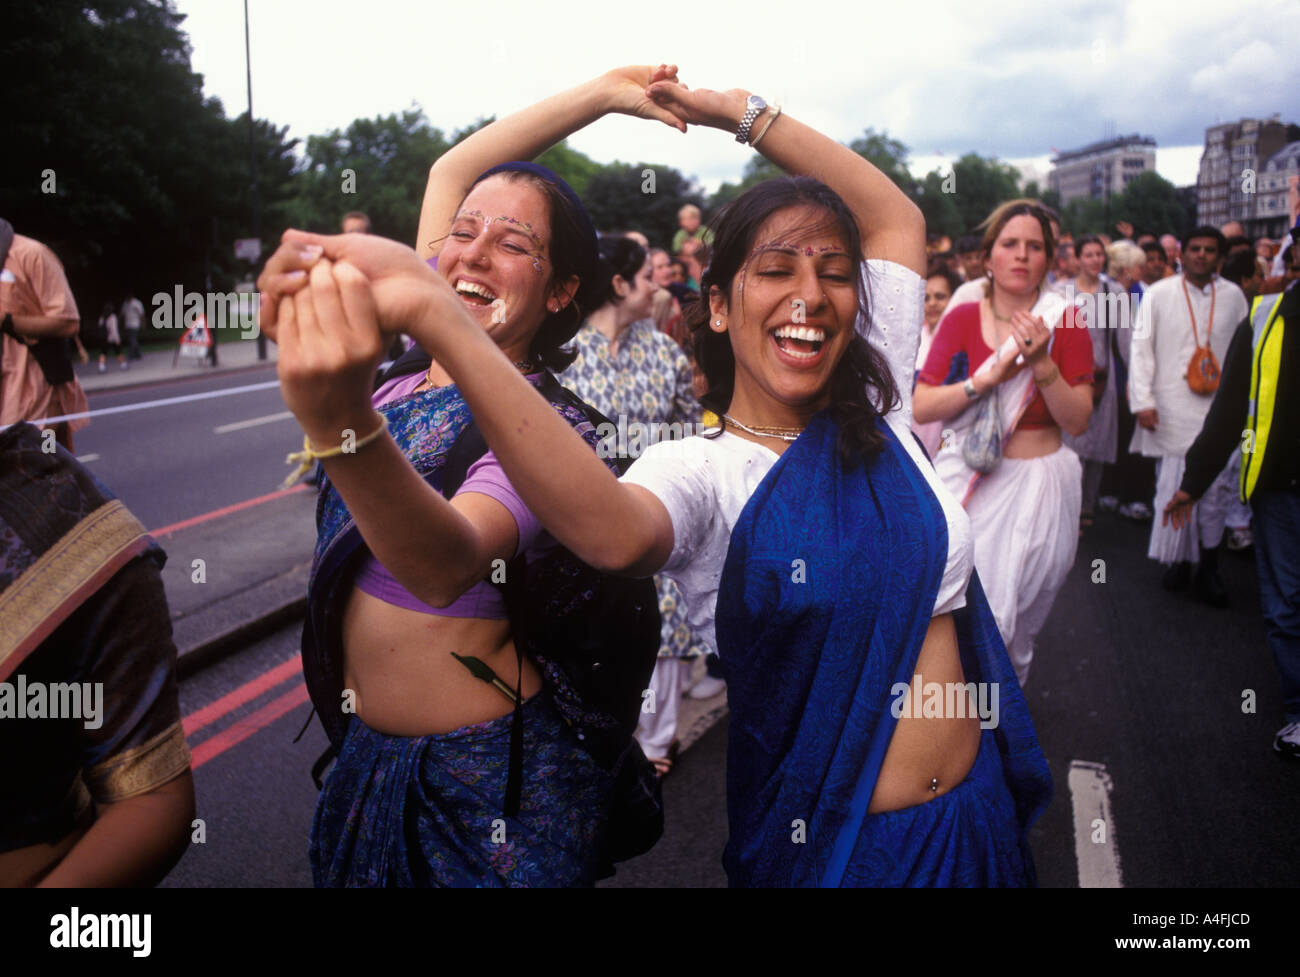 Adolescentes jeunes femmes festival hindou de Londres a mélangé des personnes ethniques diverses. Hare Krishna les dévots de Krishna dansent vers le bas Park Lane Londres Angleterre 2004 Royaume-Uni. Banque D'Images